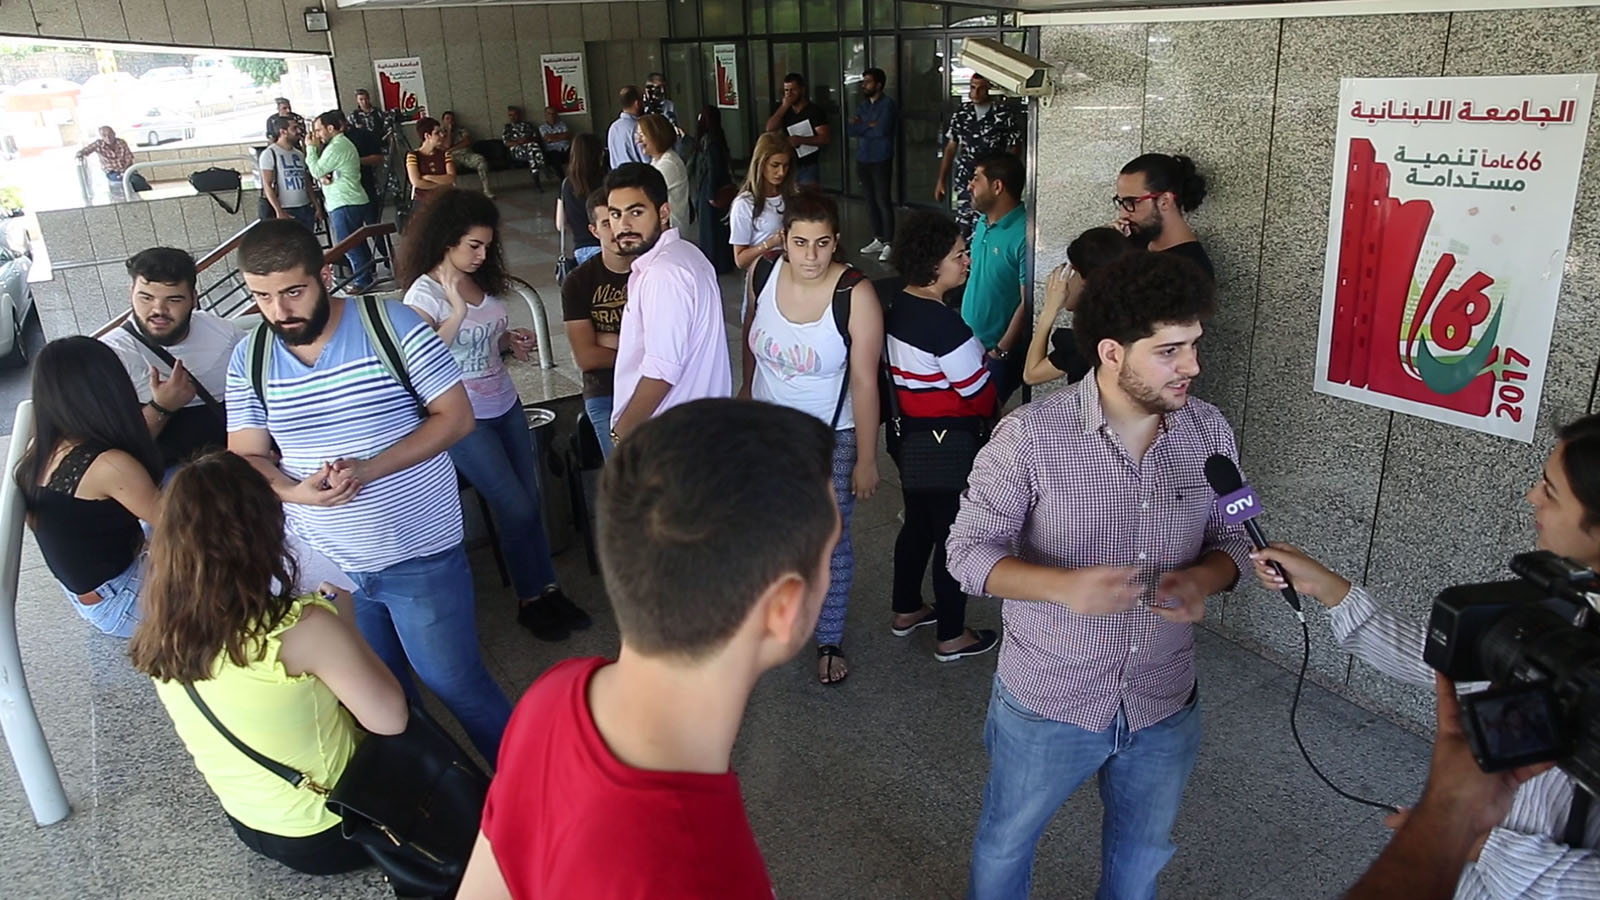 بالفيديو: طلاب "اللبنانية" يحتجون.. لم يتغير شيء